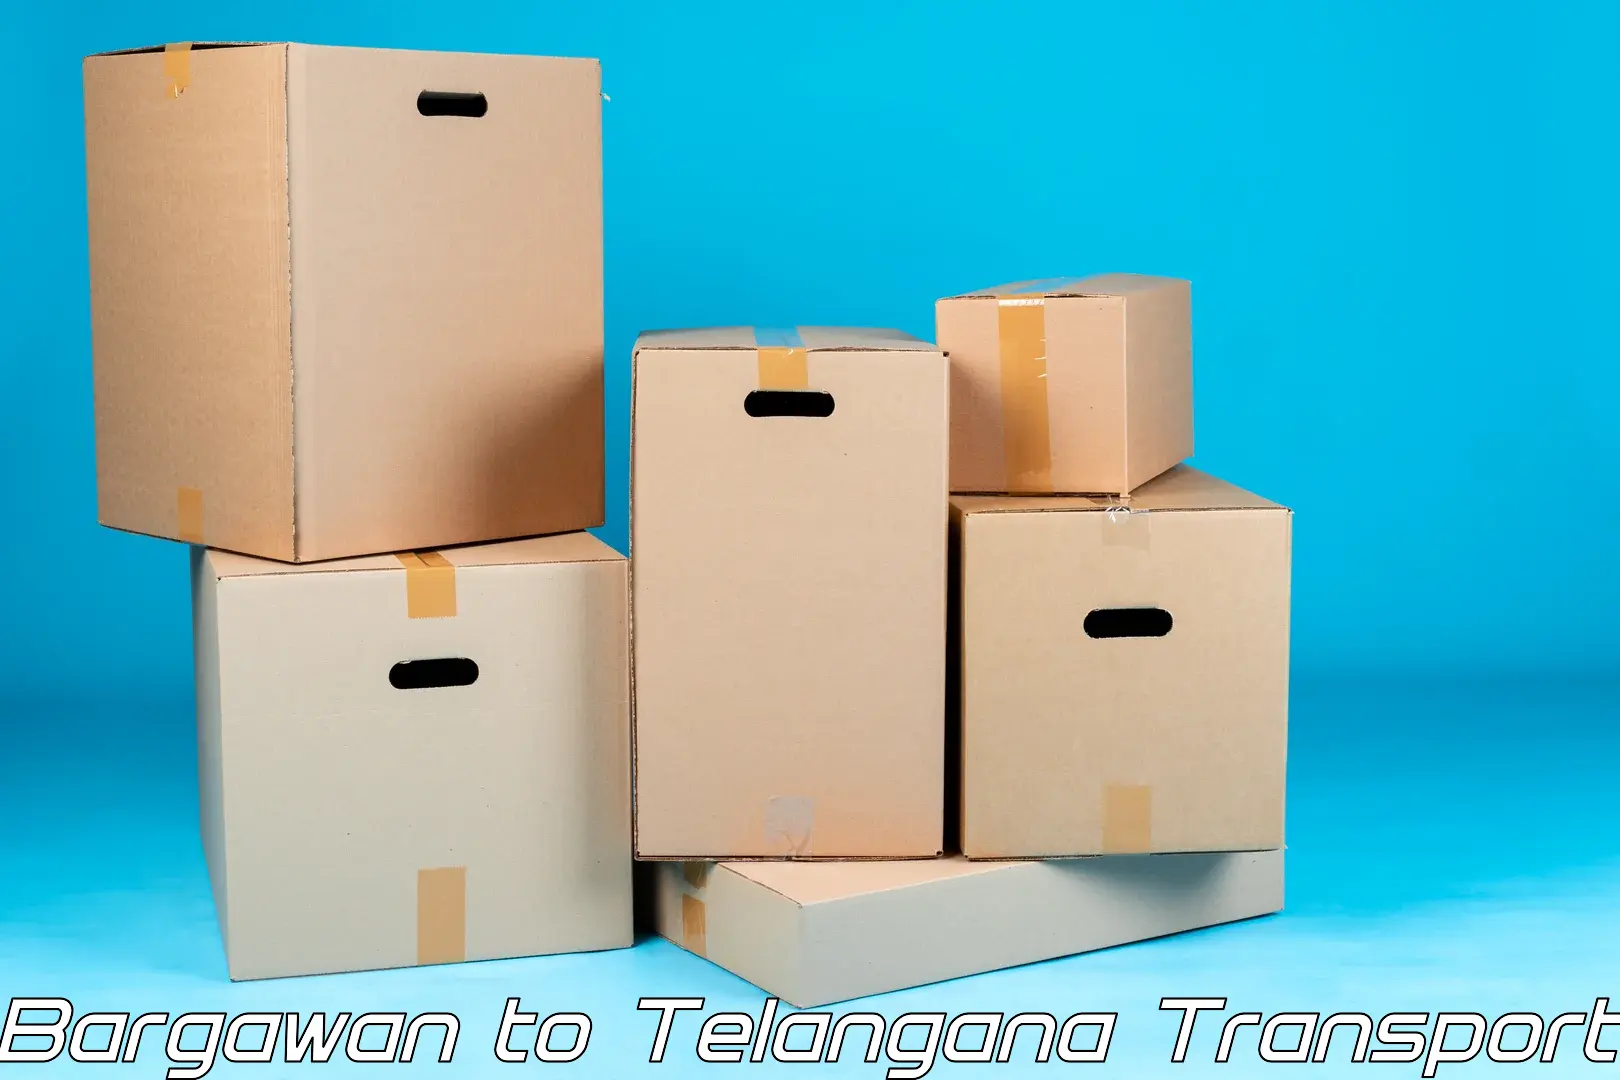 International cargo transportation services Bargawan to Telangana